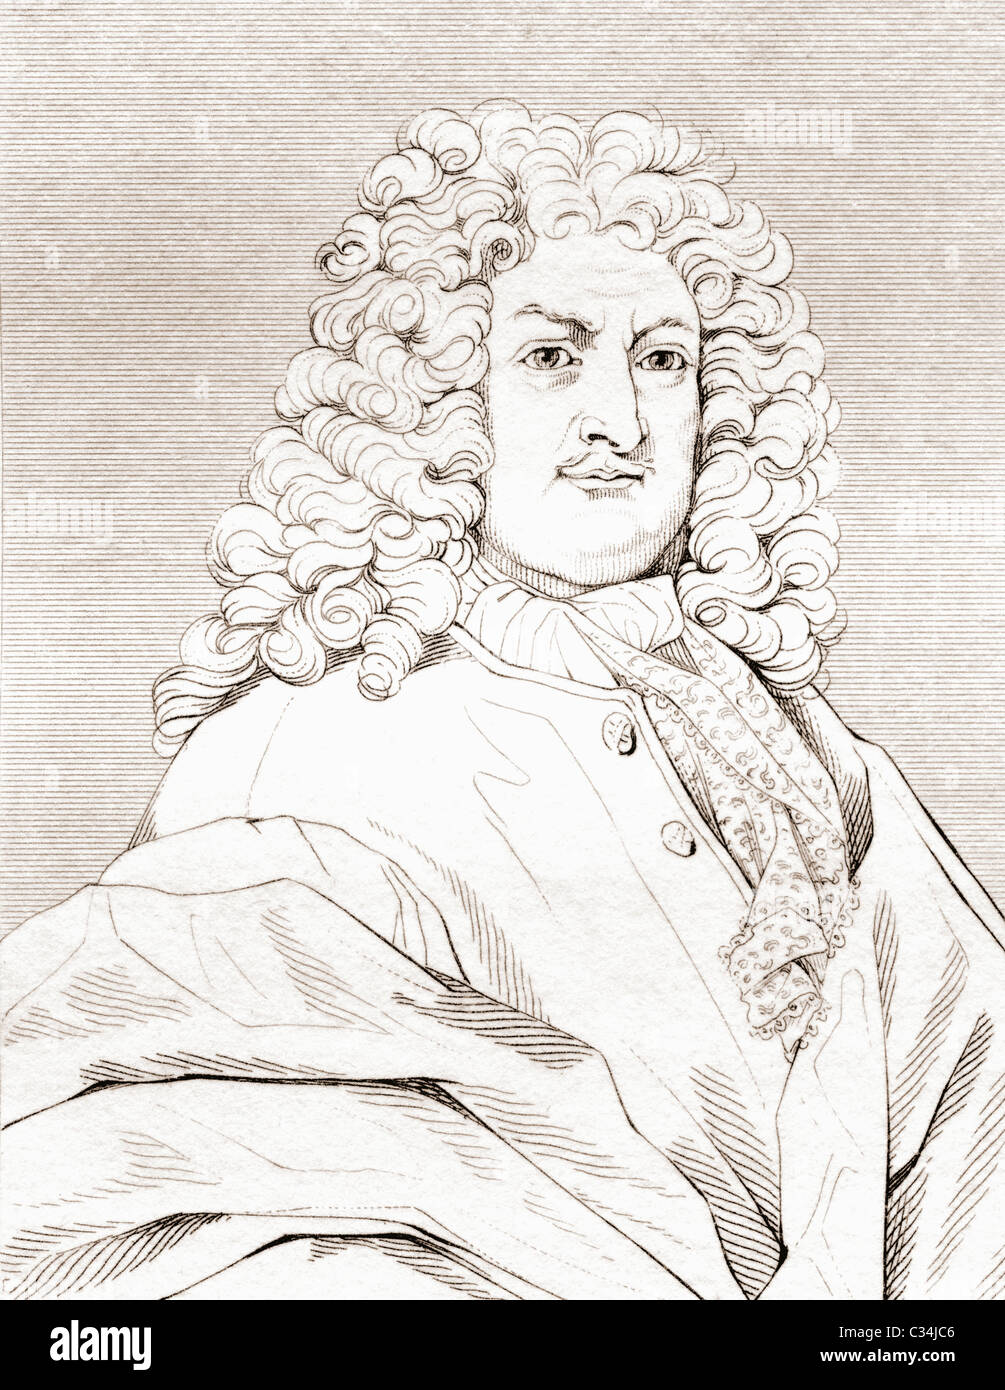 En 1646, Gottfried Wilhelm Leibniz - 1716. Philosophe et mathématicien allemand. Banque D'Images